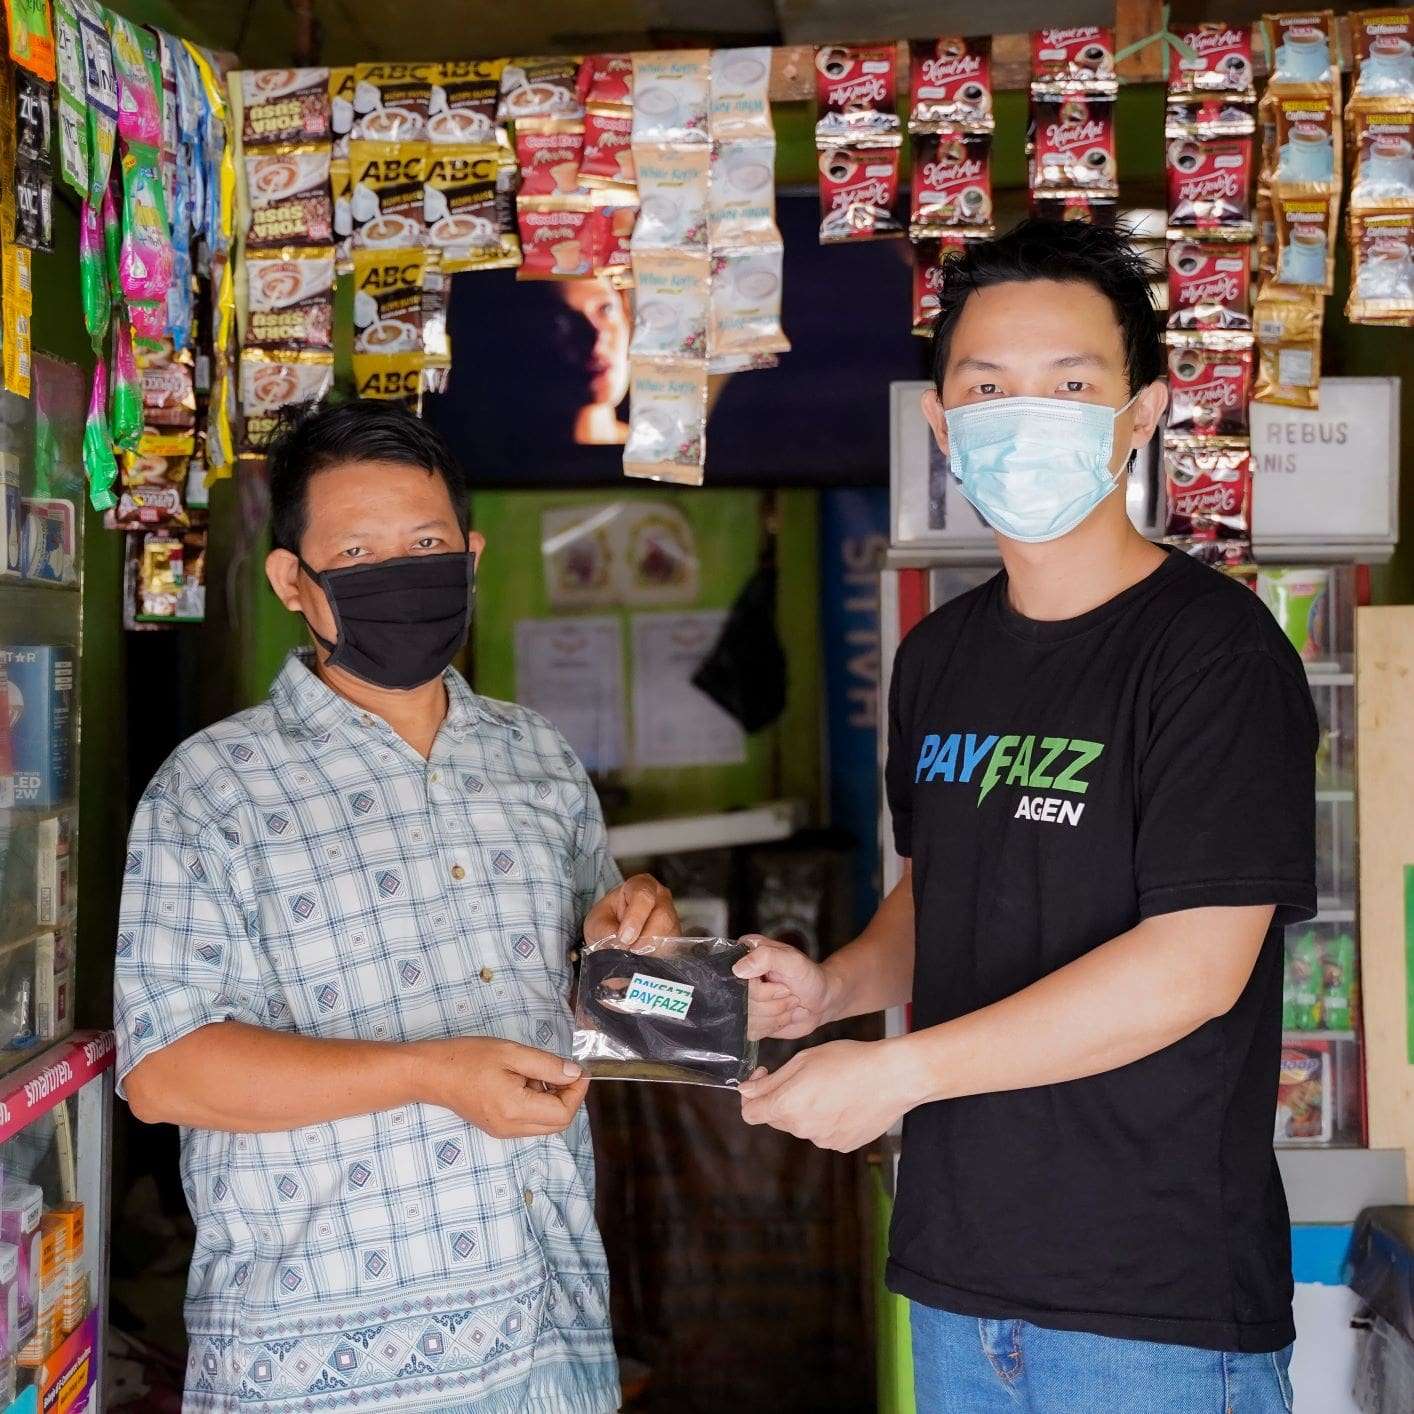 Cegah Penyebaran COVID-19, PAYFAZZ Bagikan 10.000 Masker Gratis untuk Agen